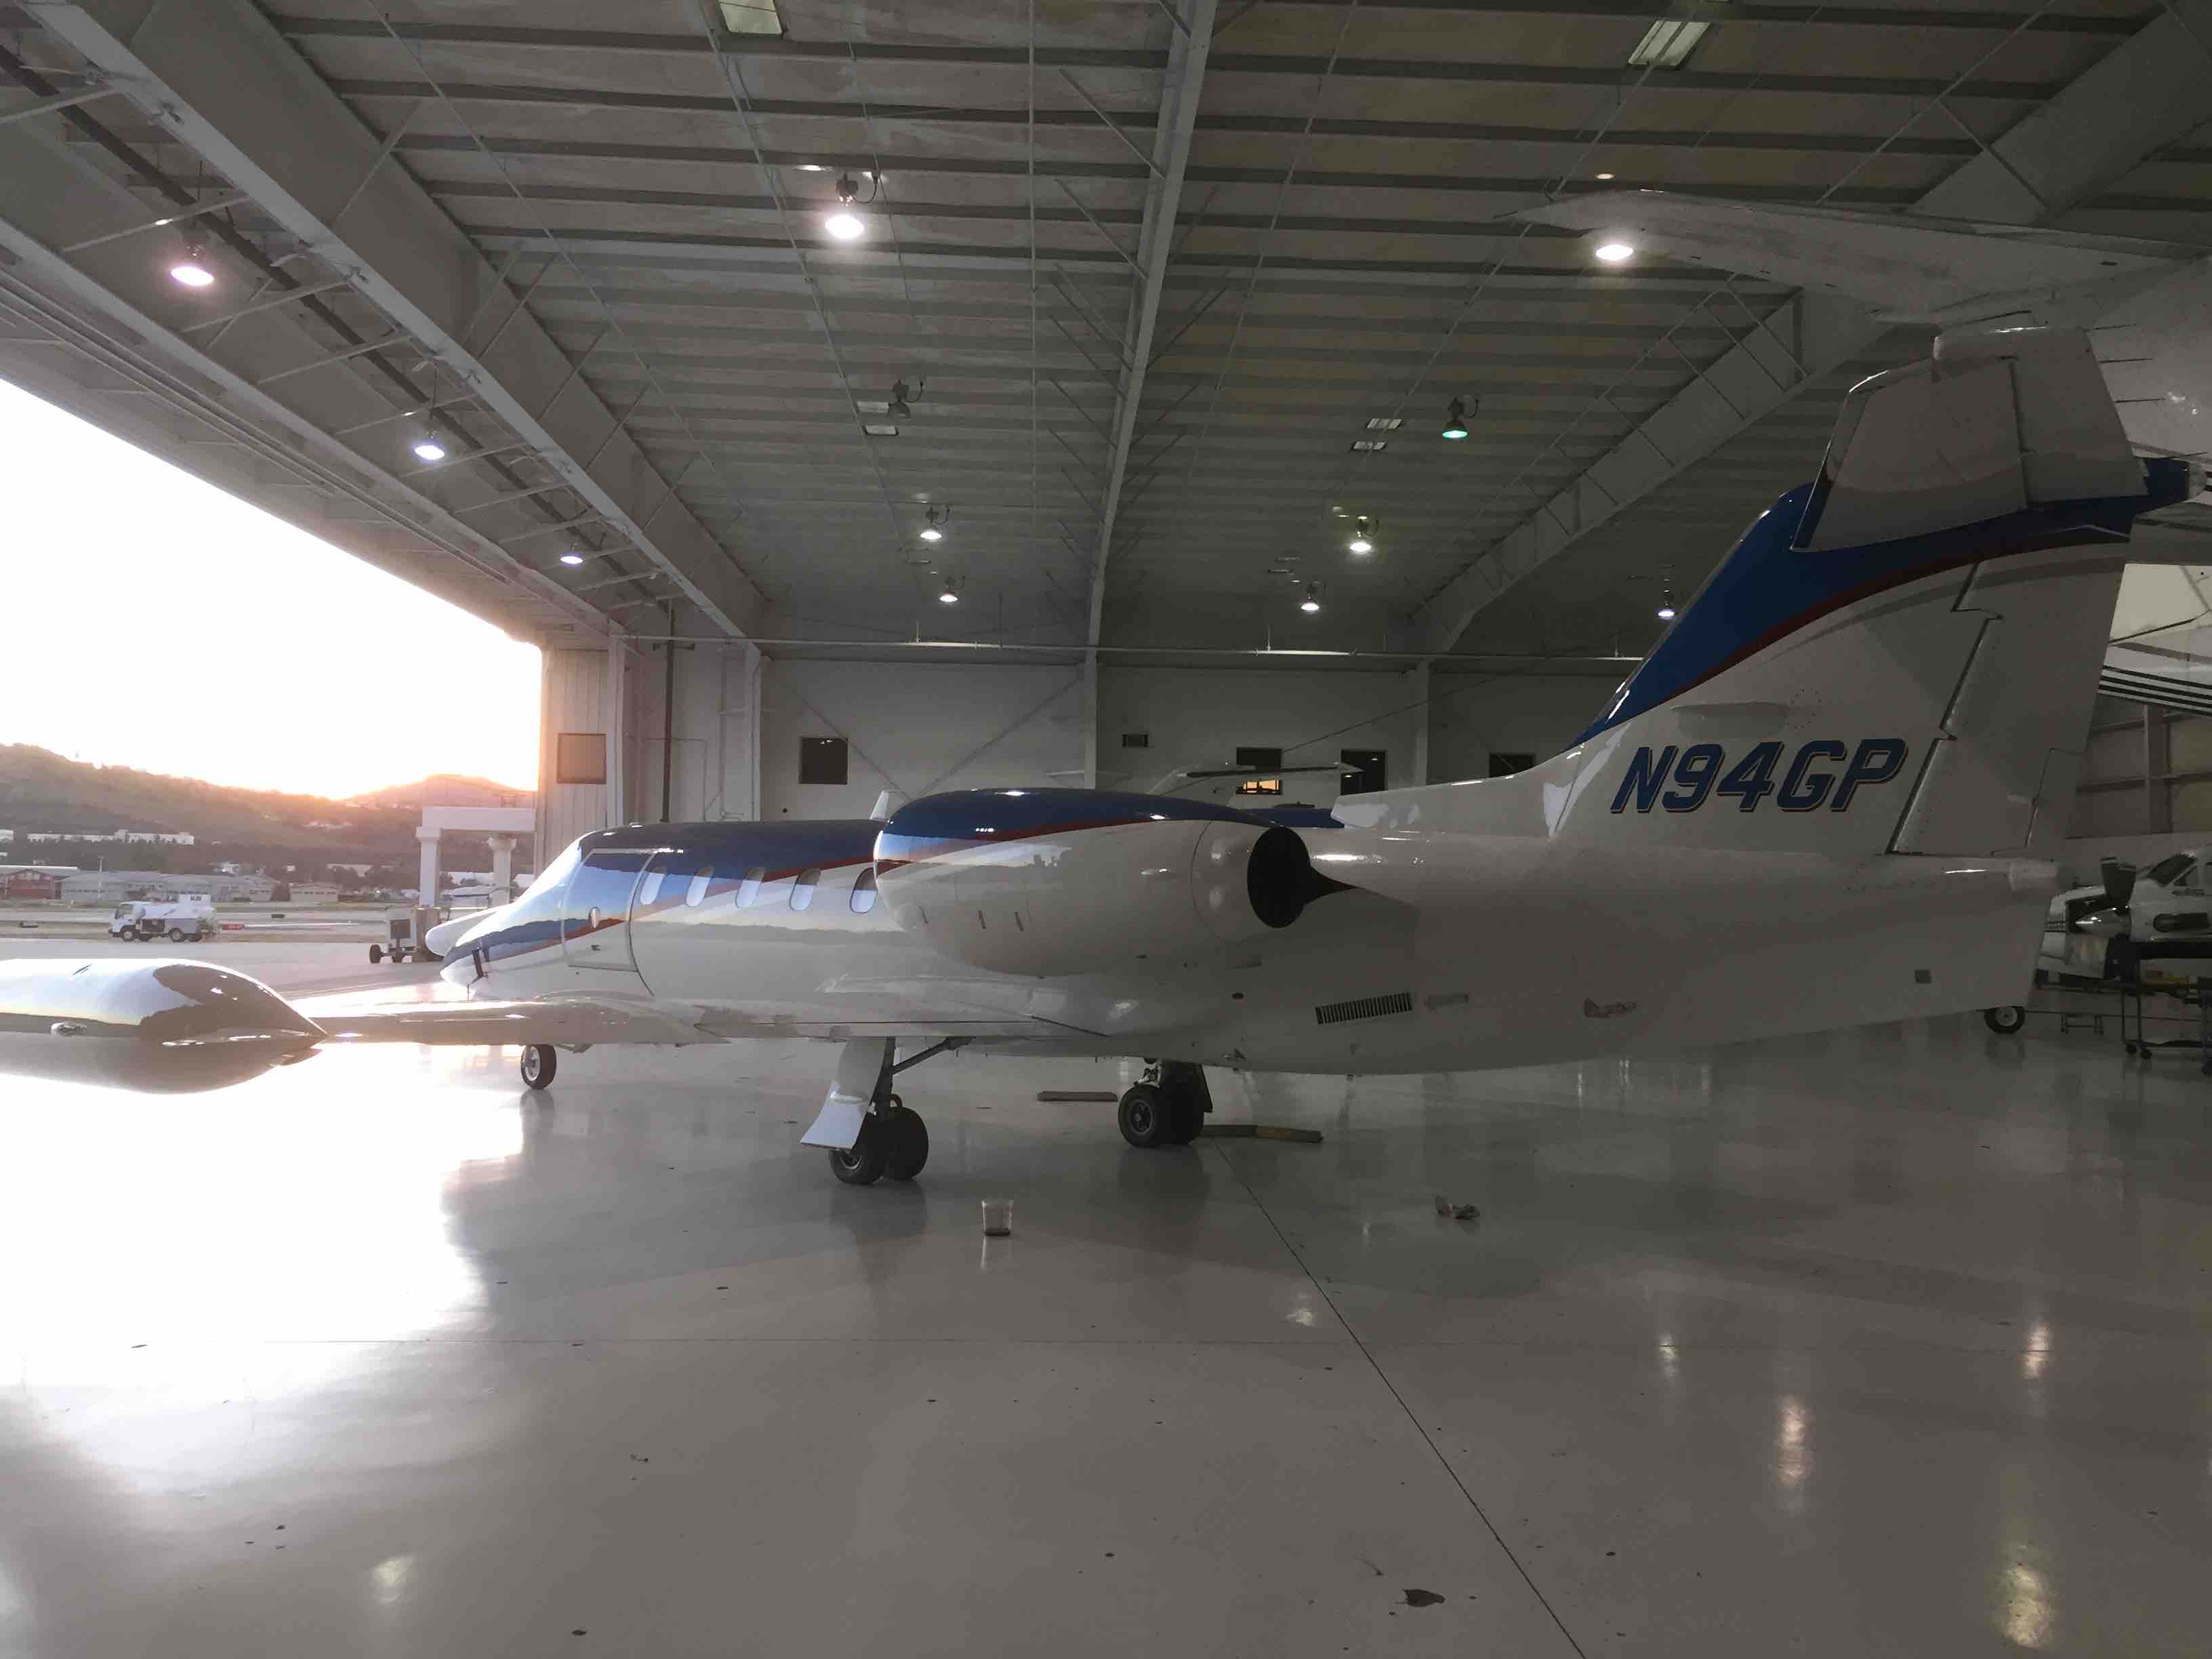 View N94GP-11 in Aeromedevac's hanger in El Cajon